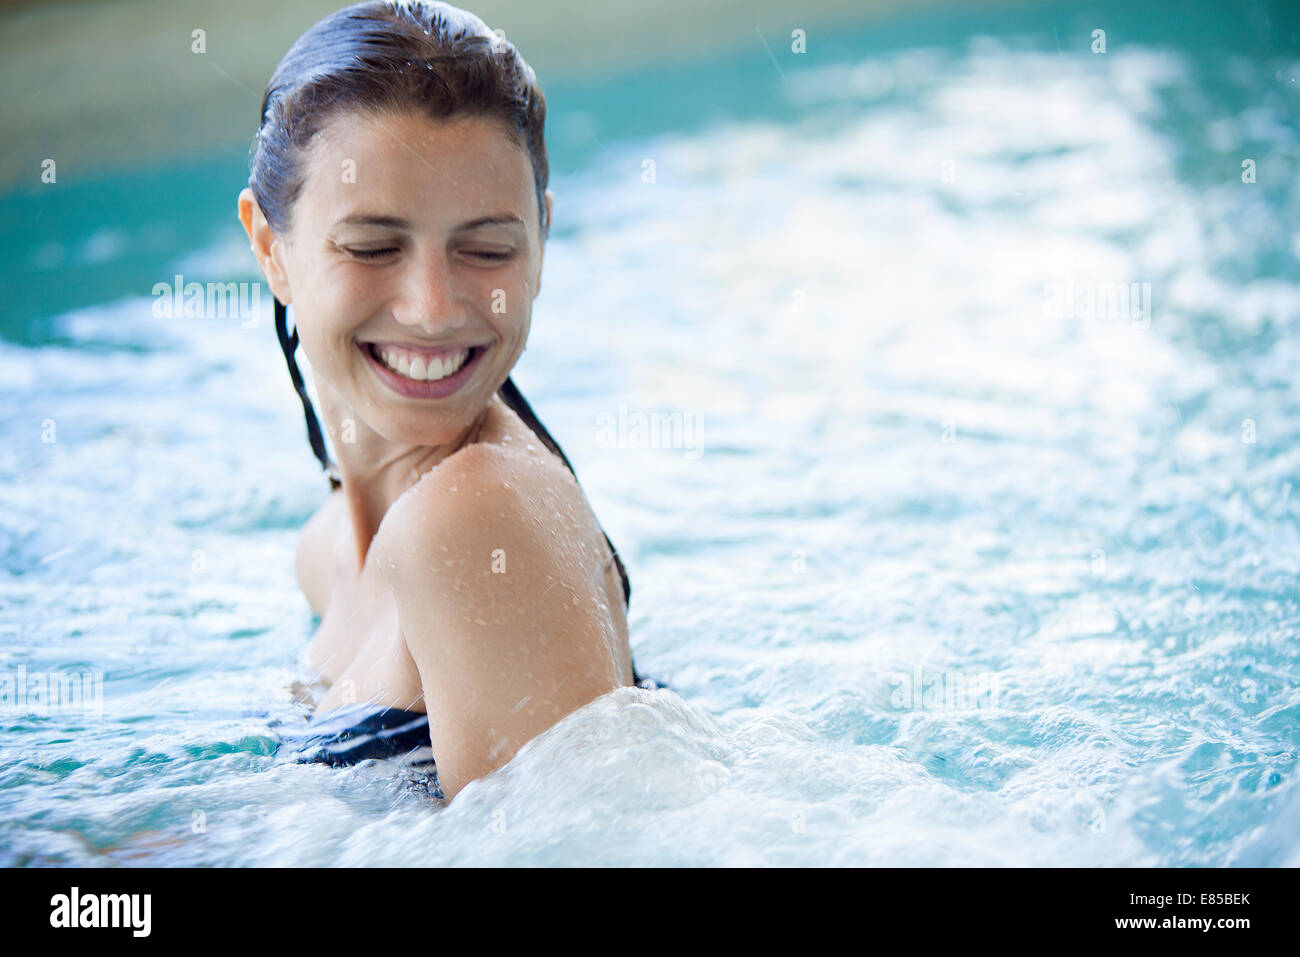 Woman swimming in pool Stock Photo